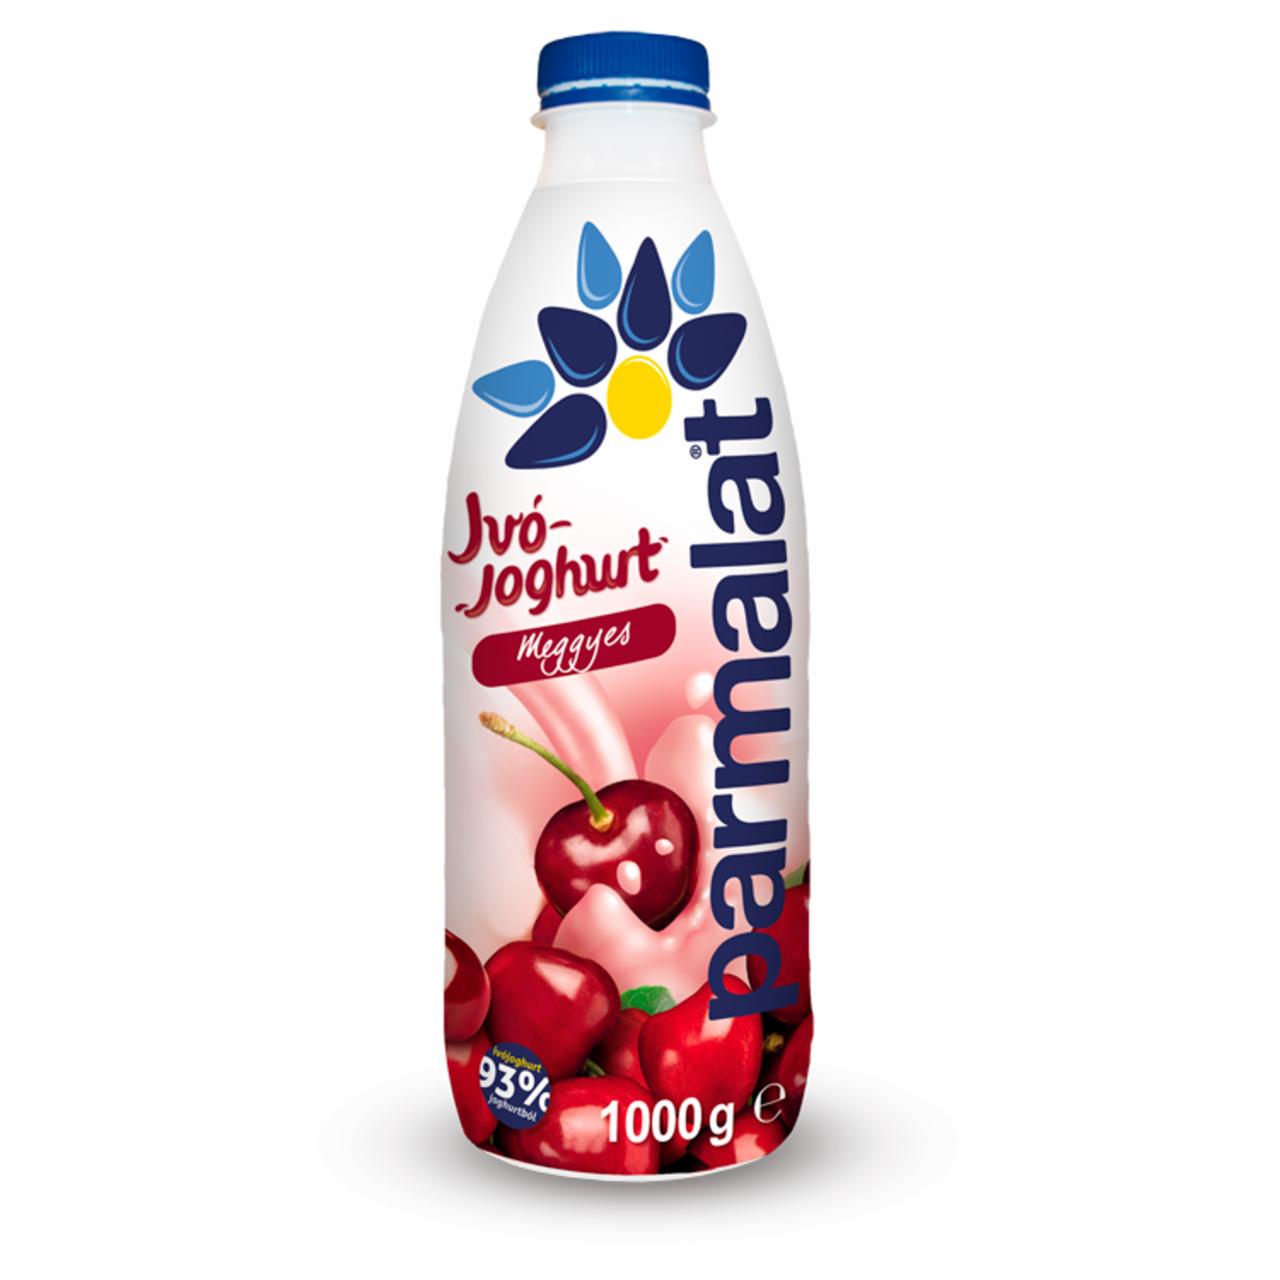 Képek - Parmalat zsírszegény meggyes ivójoghurt 1000 g